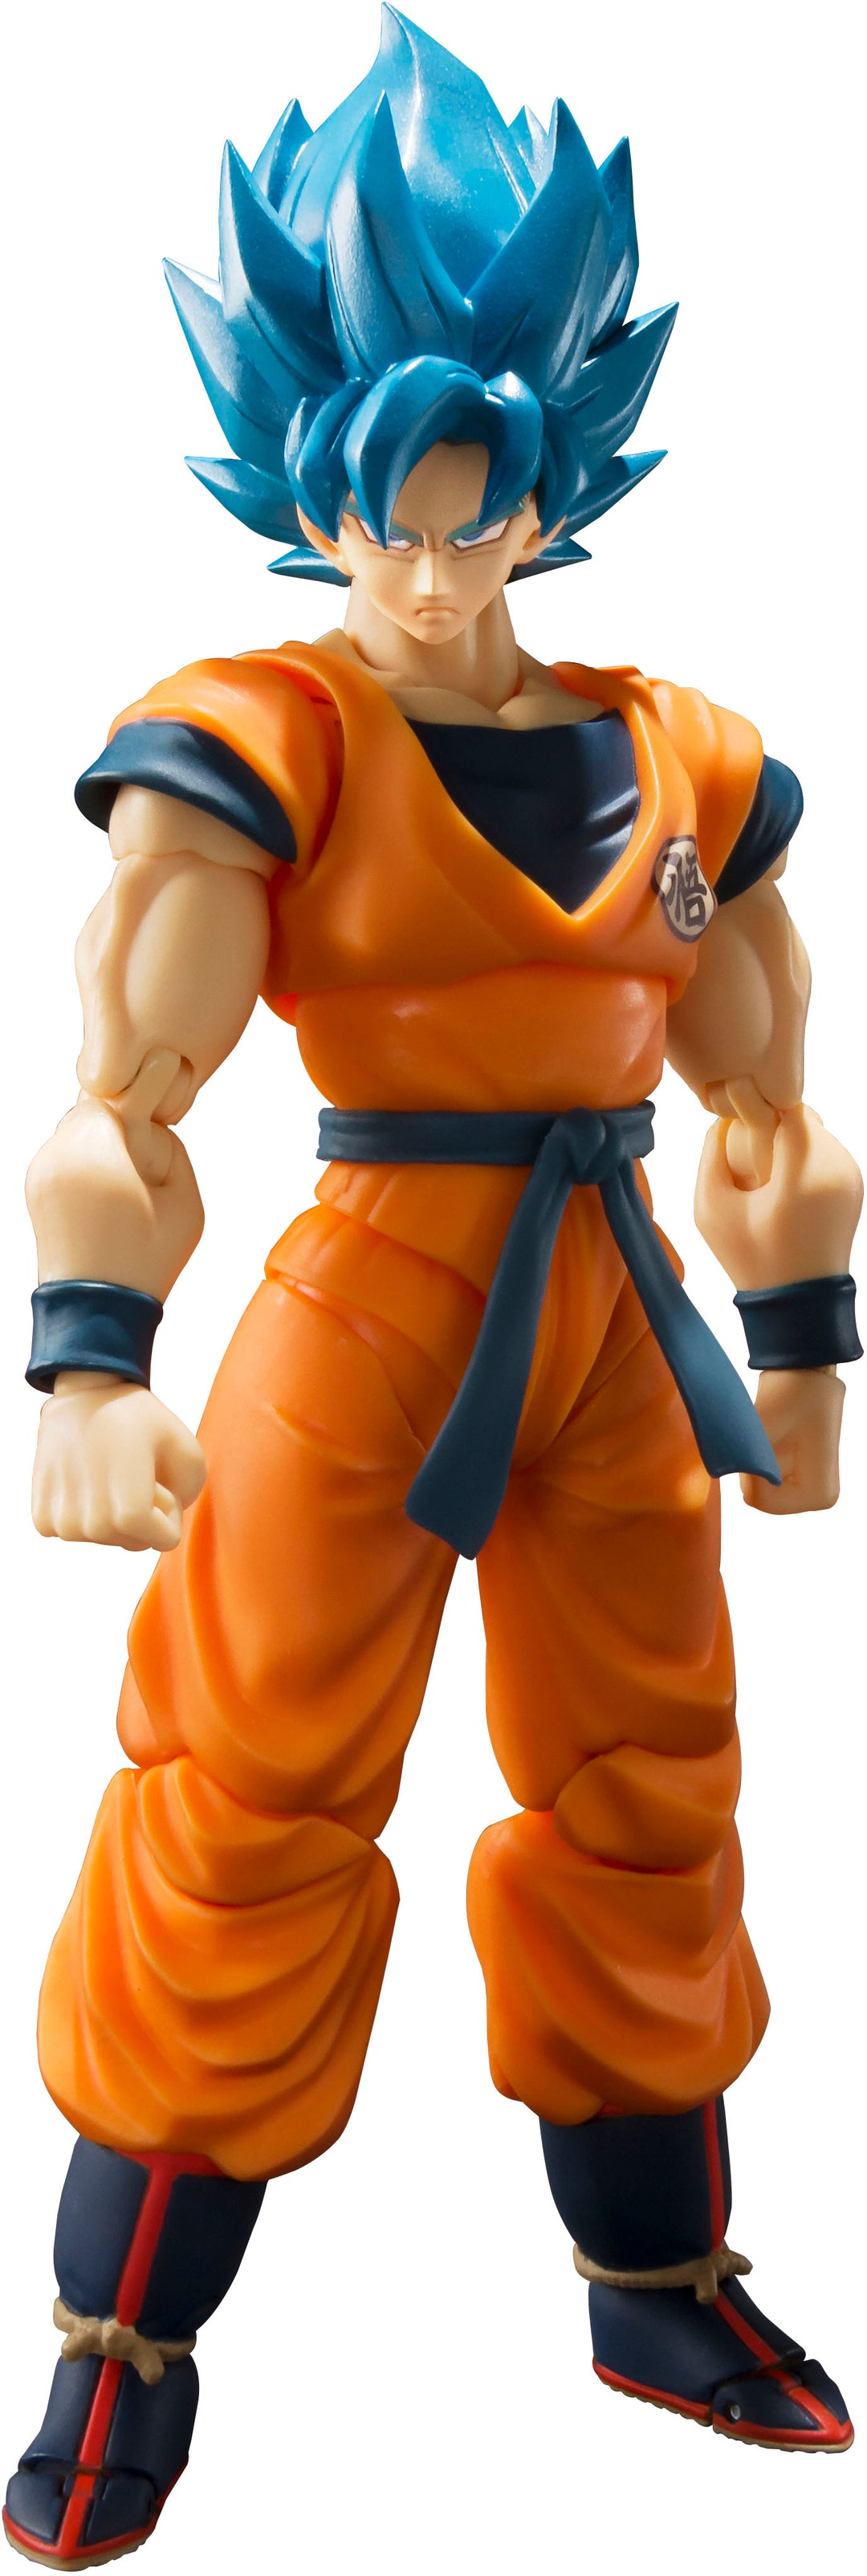 Bandai - Super Saiyan God Super Saiyan Goku S.H.Figuarts_0